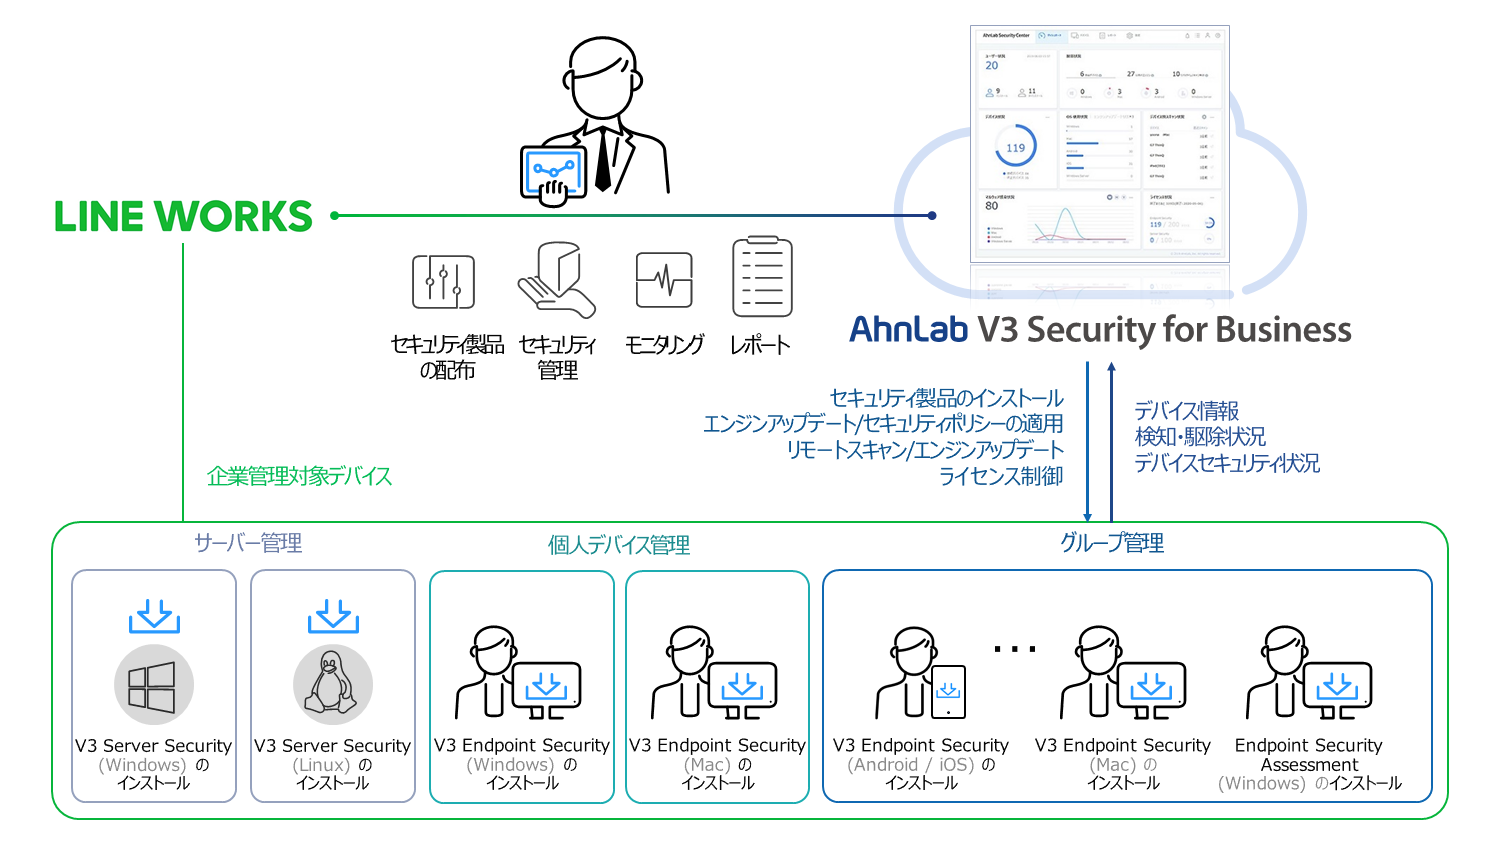 AhnLab V3 Security for Business - LINE WORKS